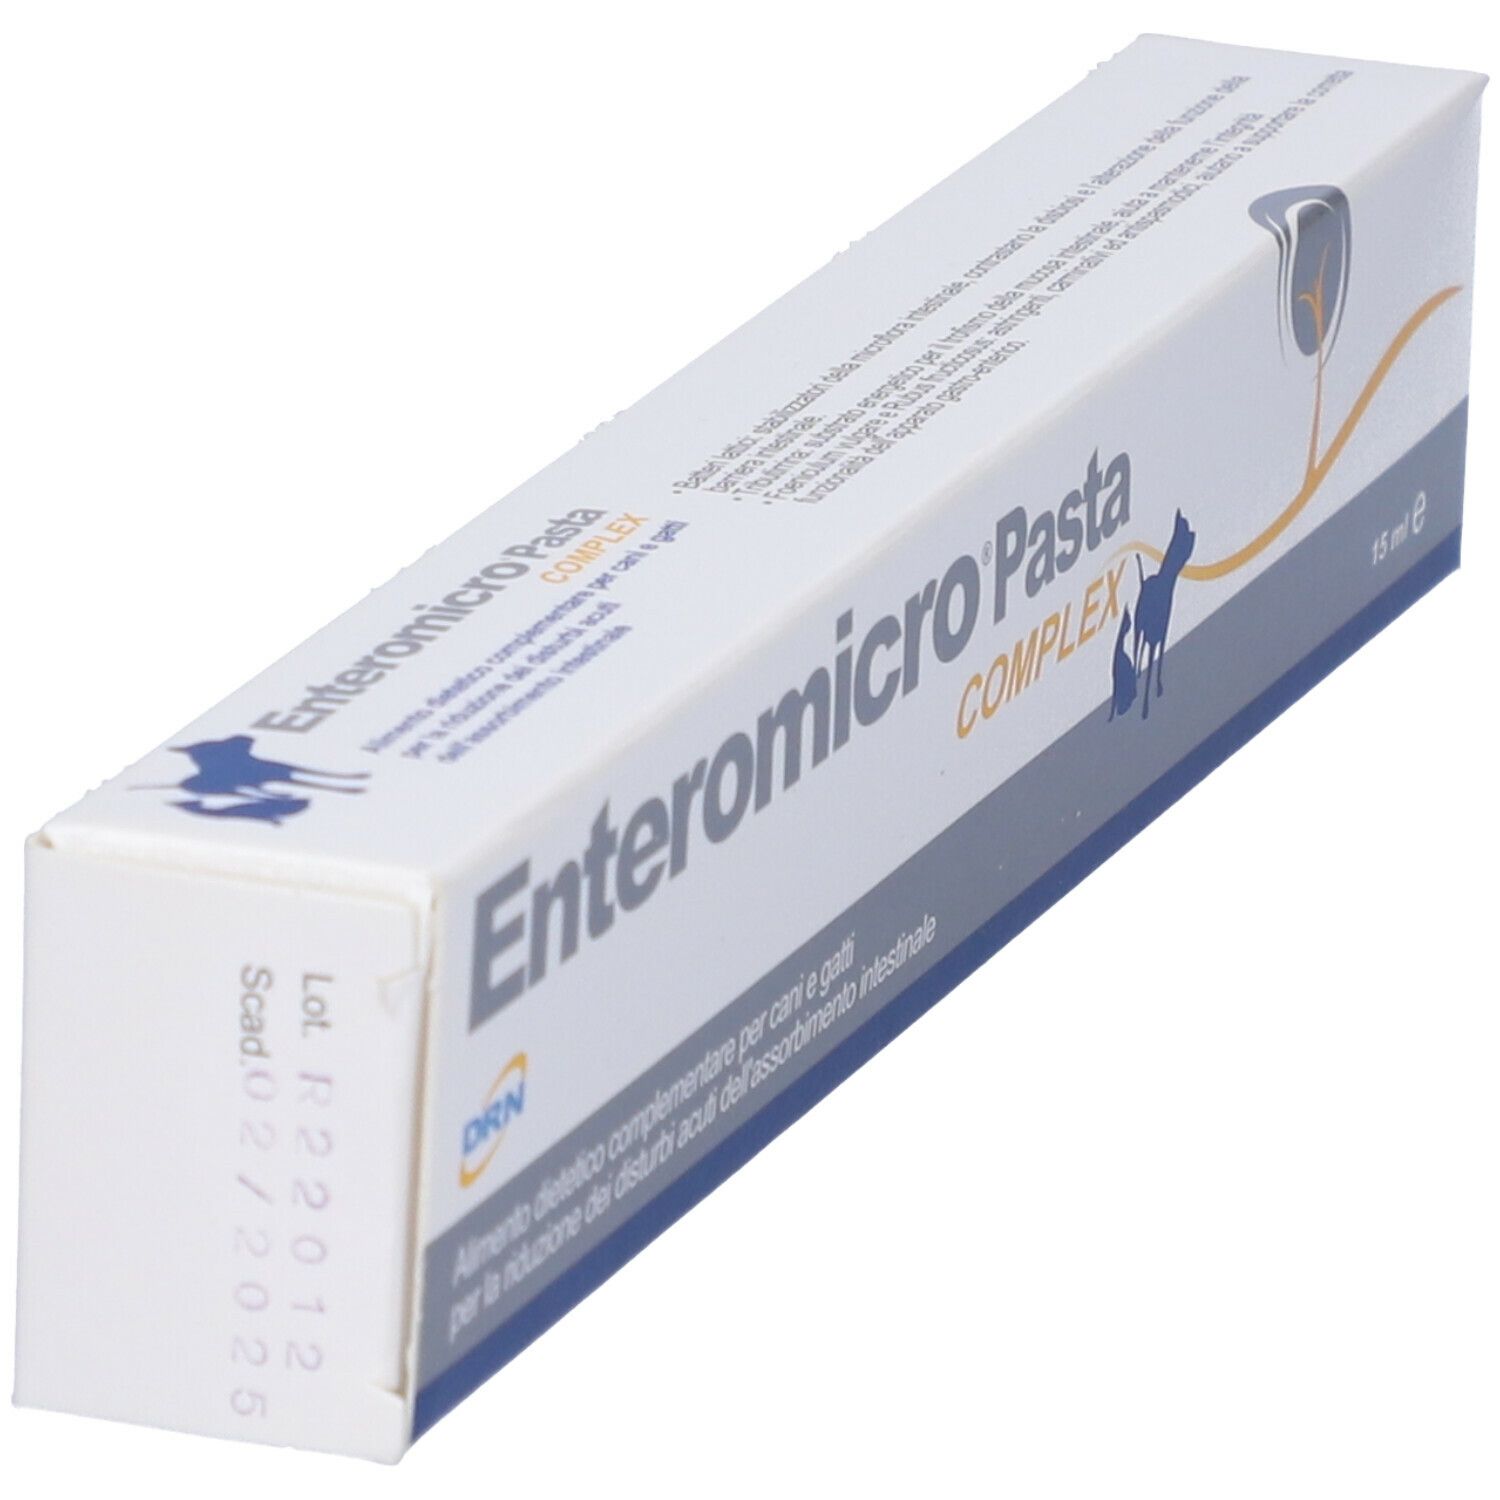 Enteromicro Complex Pasta 15Ml 15 ml | Redcare